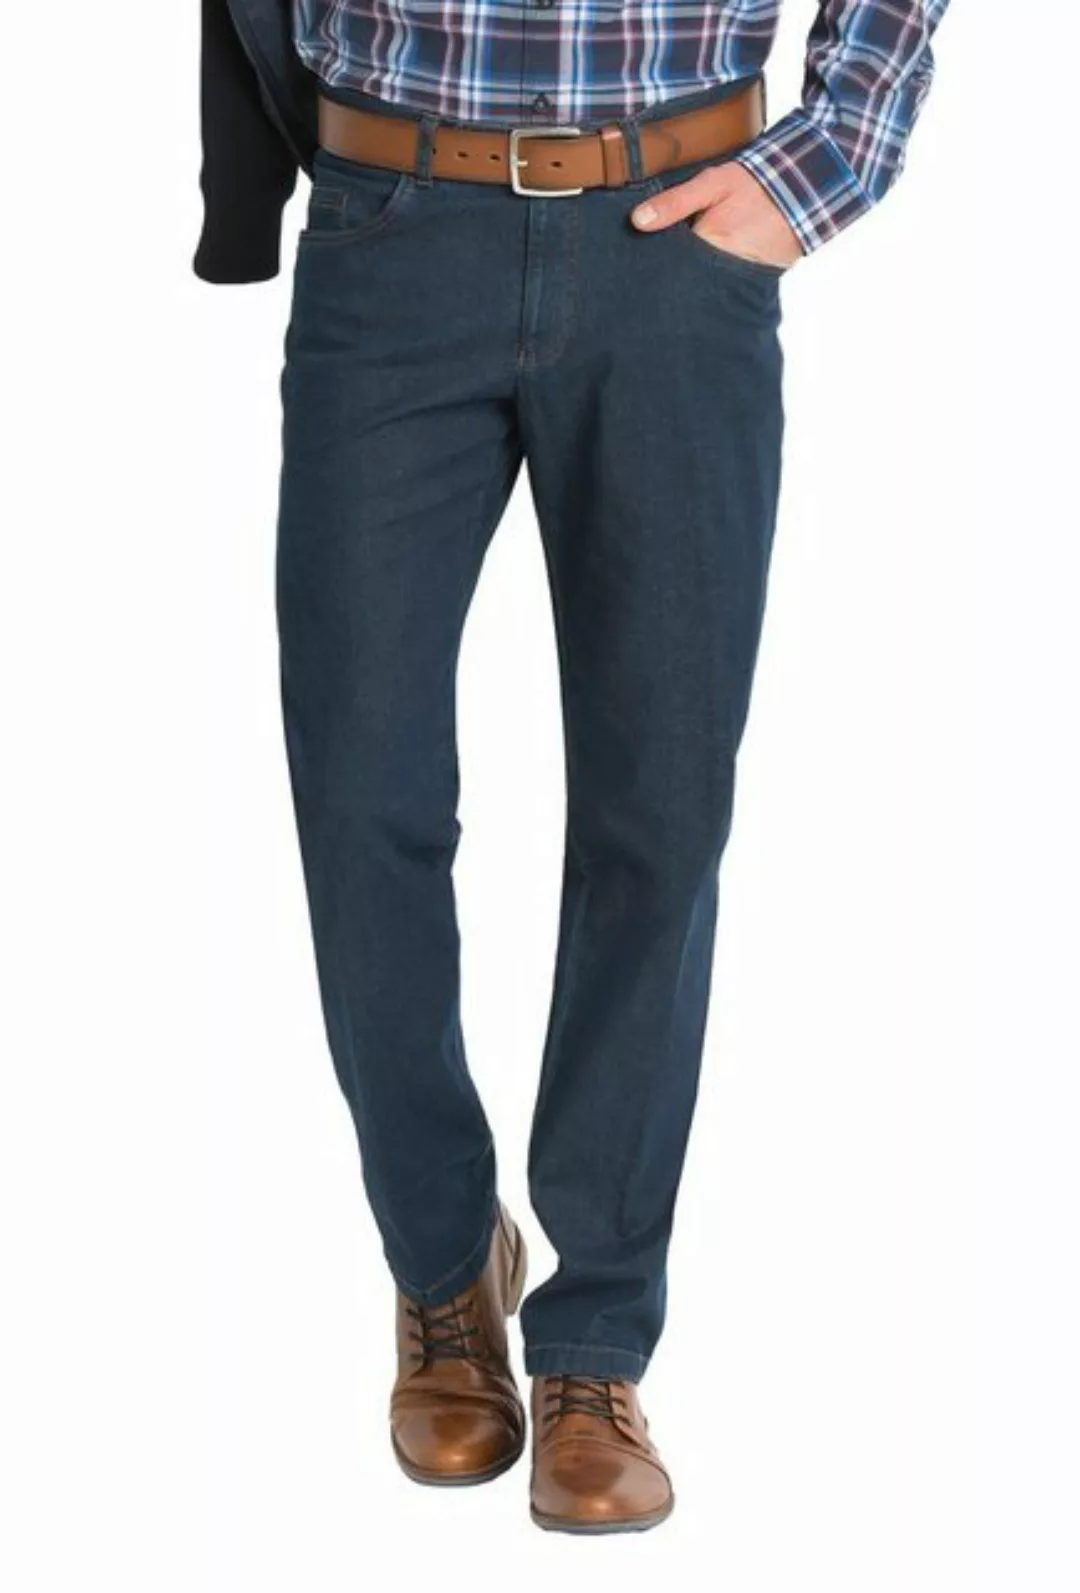 aubi: Bequeme Jeans aubi Perfect Fit Herren Jeans Hose Stretch Modell 577 günstig online kaufen